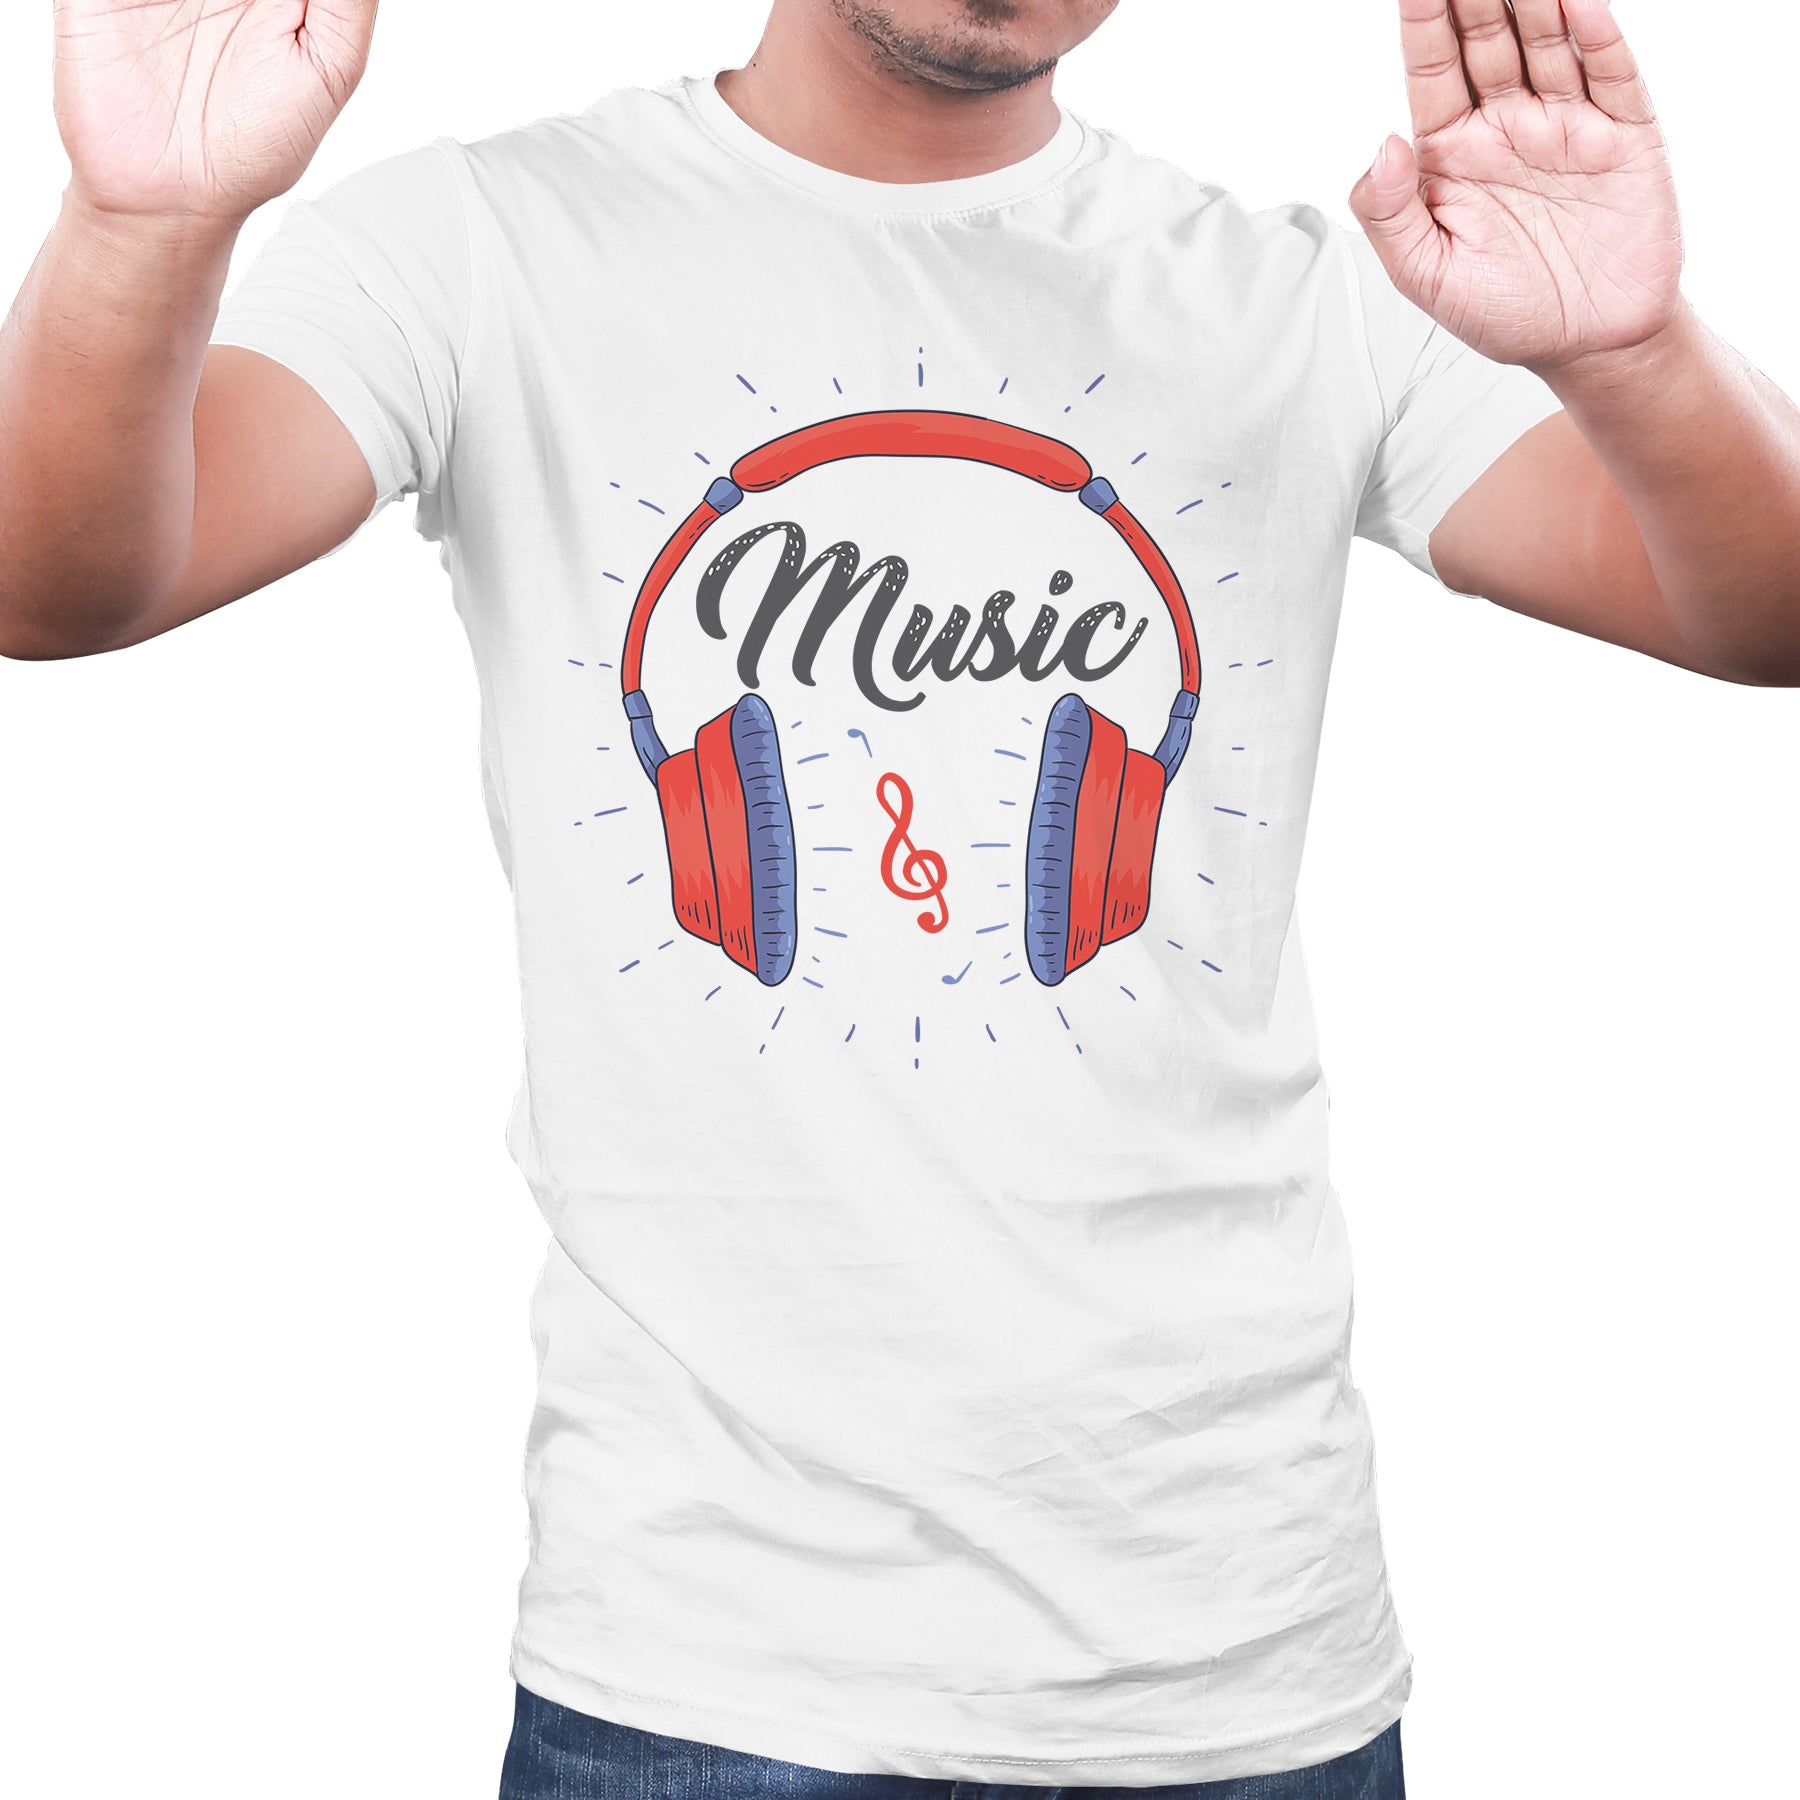 music lovers t shirts, Music themed tshirt, musician tshirts - White 09